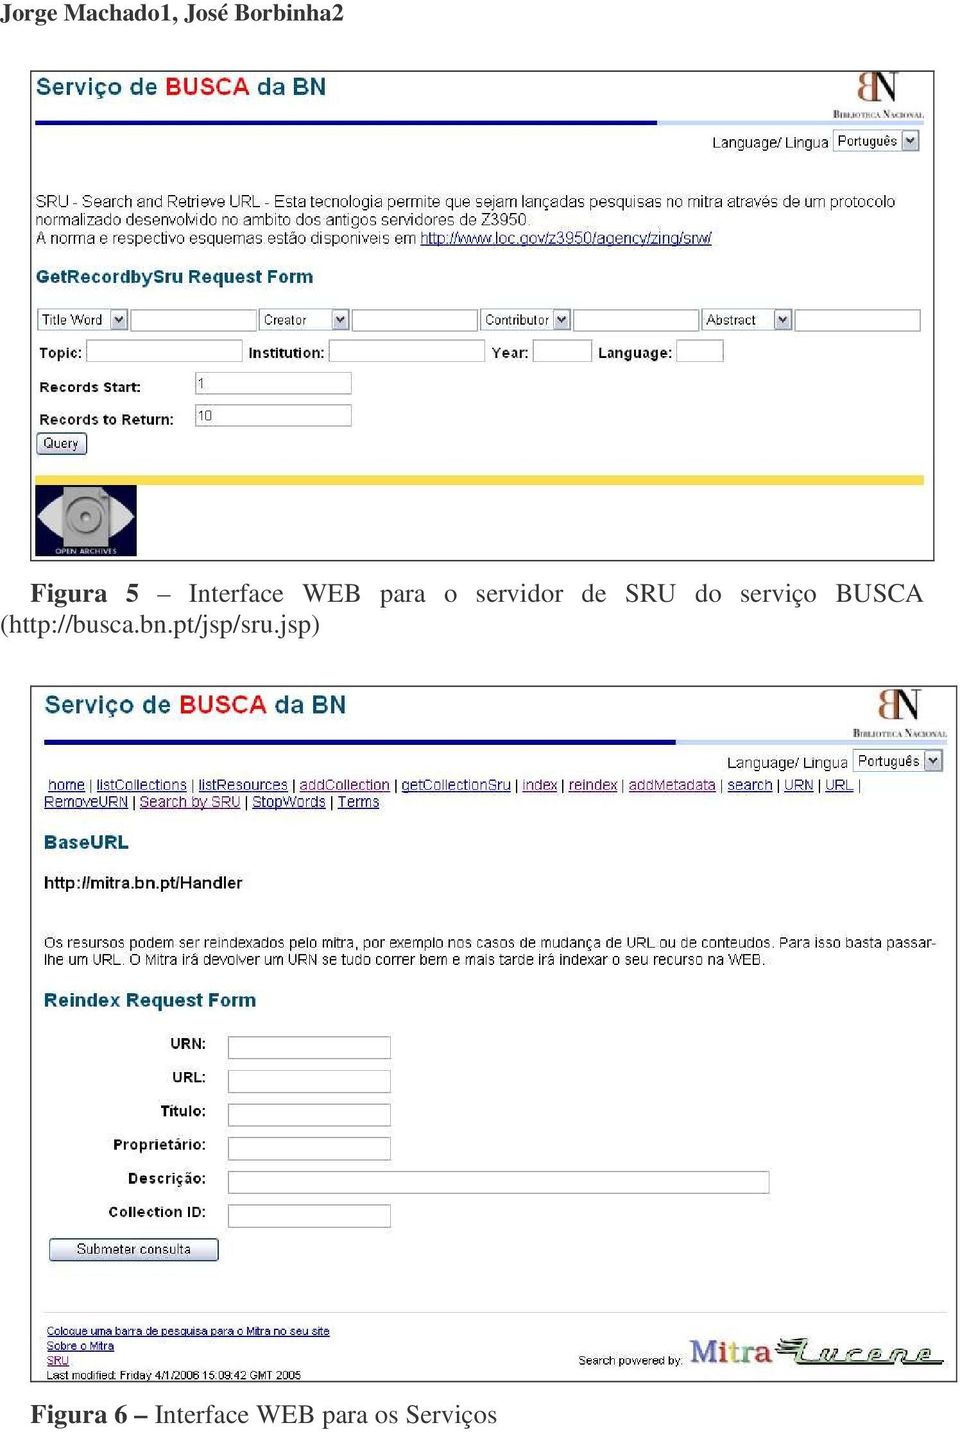 serviço BUSCA (http://busca.bn.pt/jsp/sru.